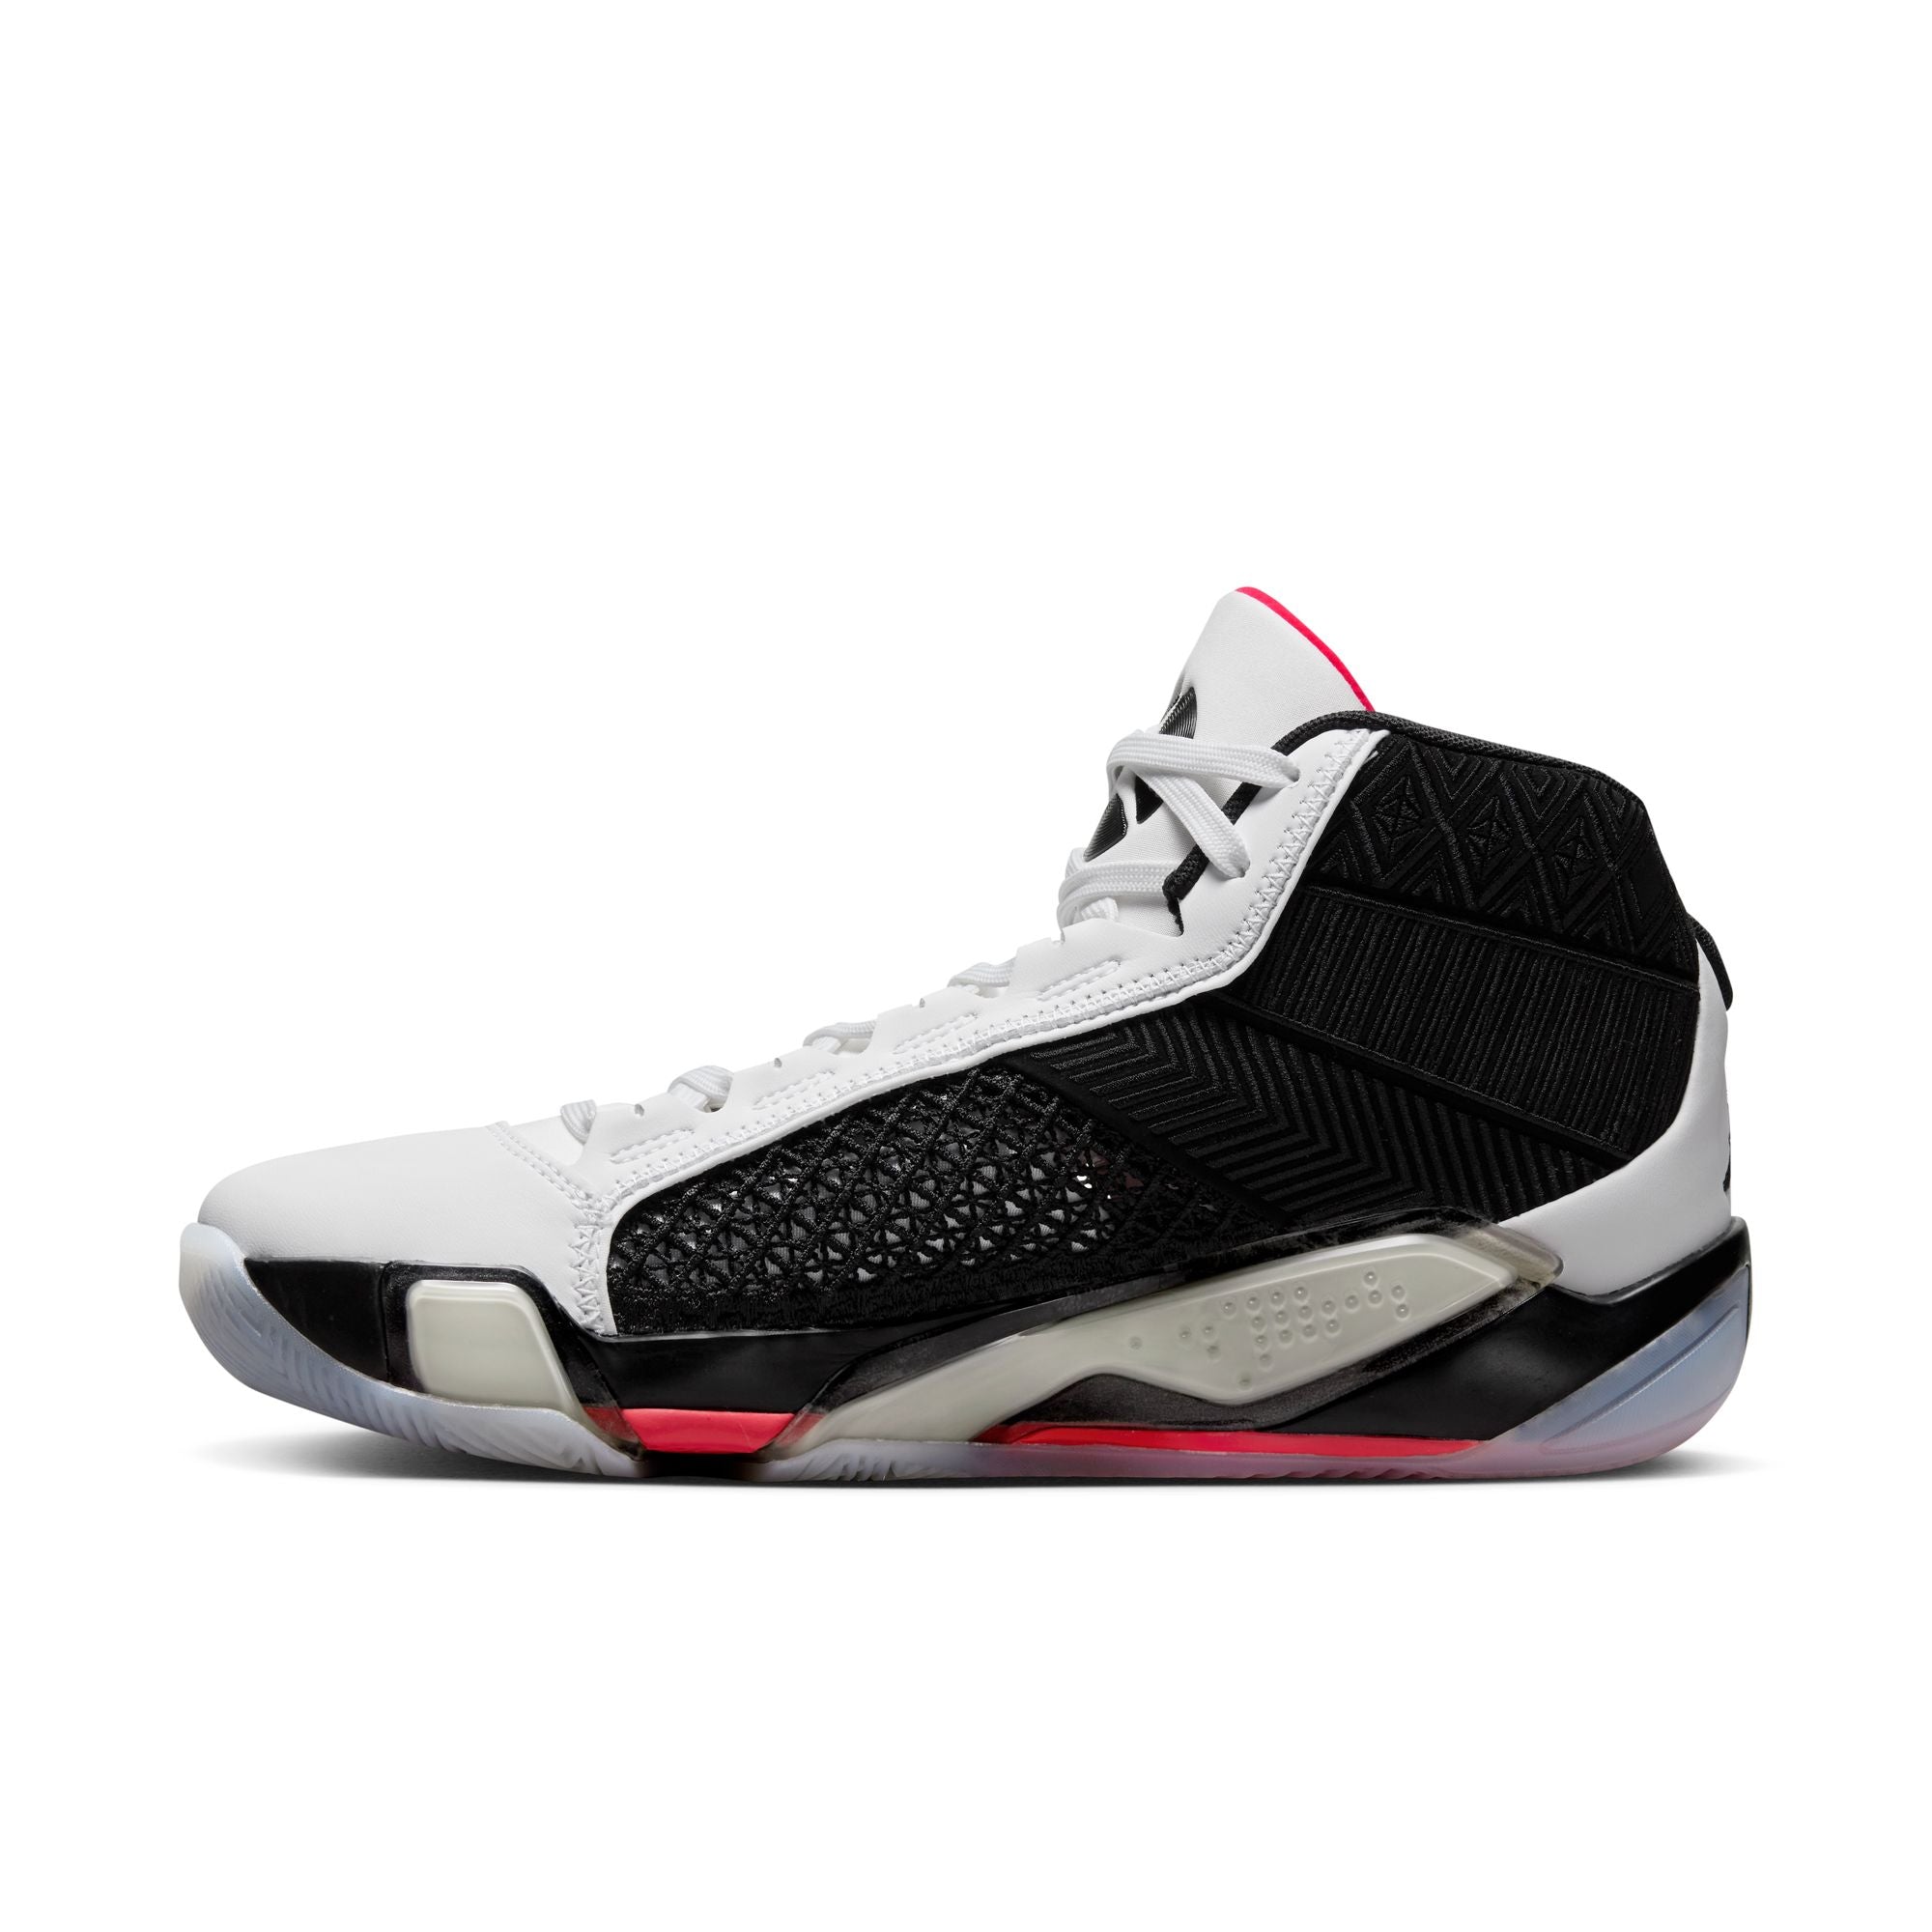 Air Jordan XXXVIII "Fundamental" Basketball Shoes